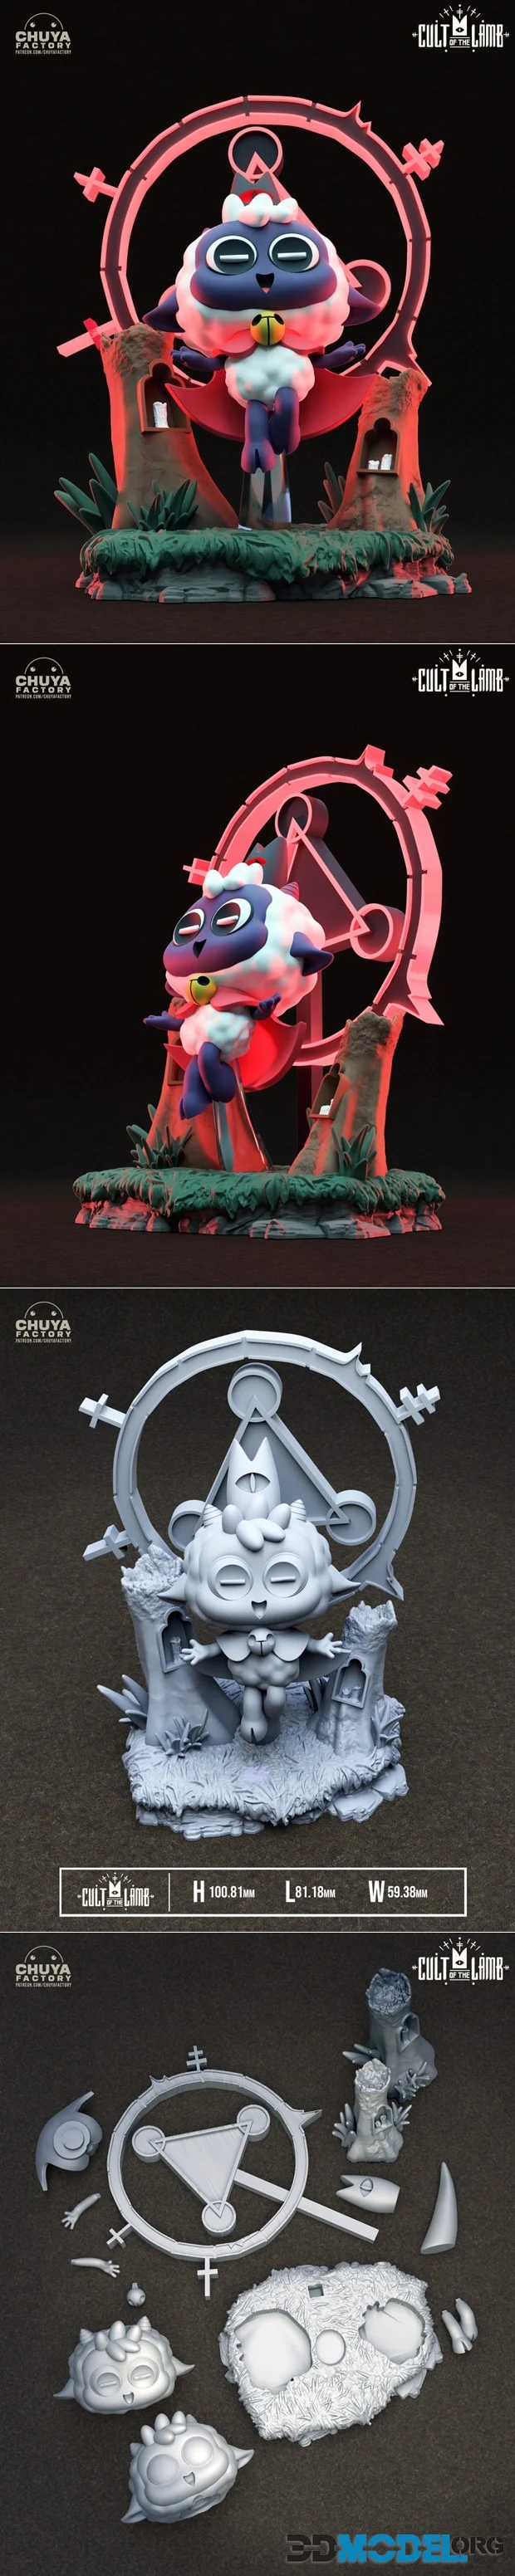 Cult of the Lamb - 3D Print figure 3D model 3D printable